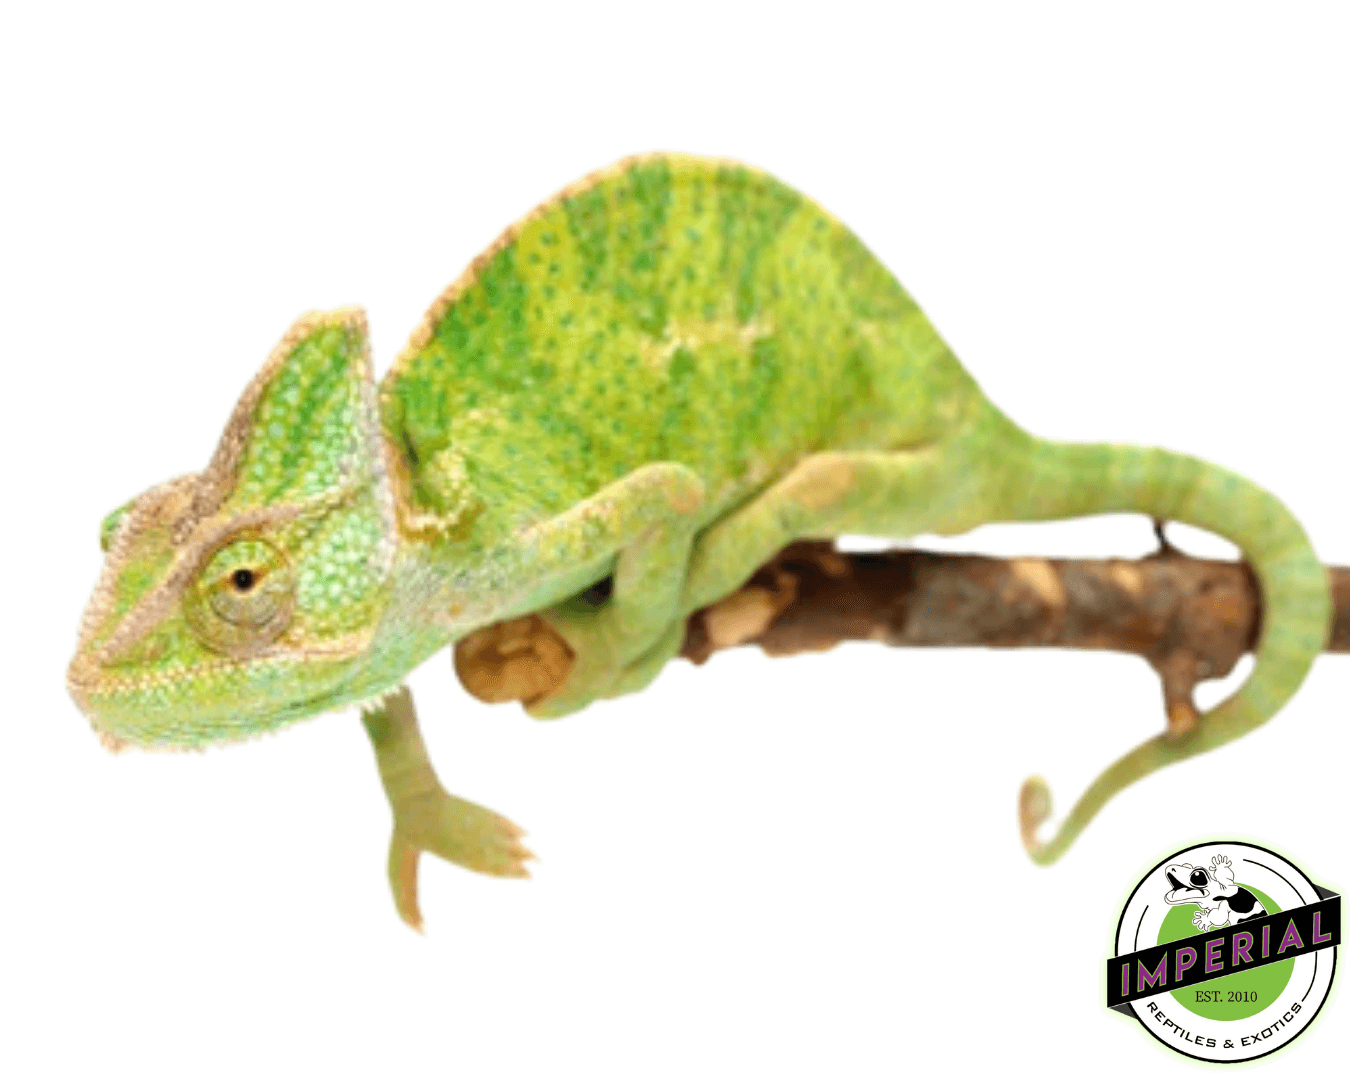 veiled chameleon for sale, buy reptiles online